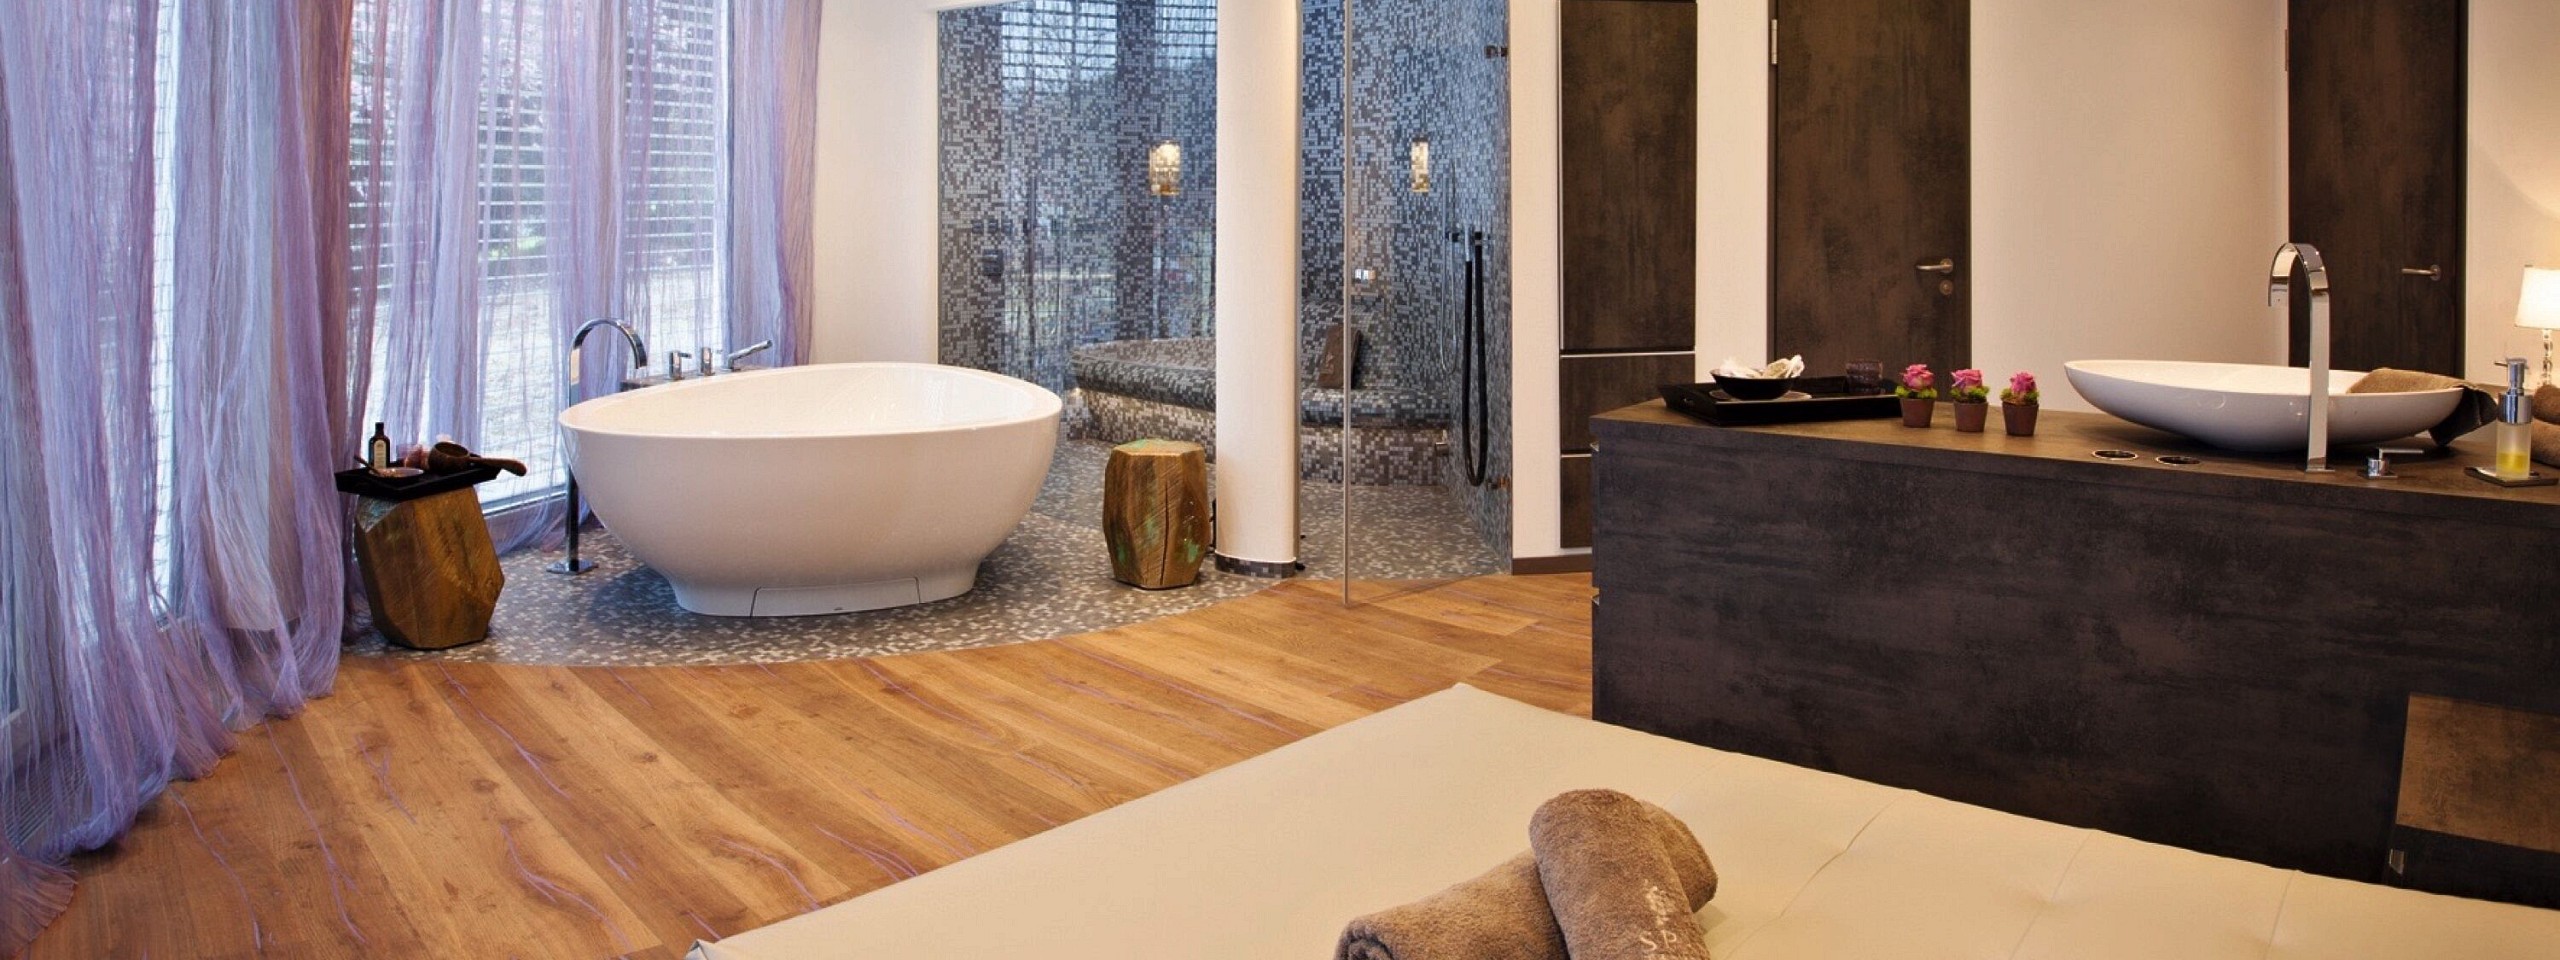 Moderner Spabereich mit freistehender Badewanne im Hotel im Schwarzwald.